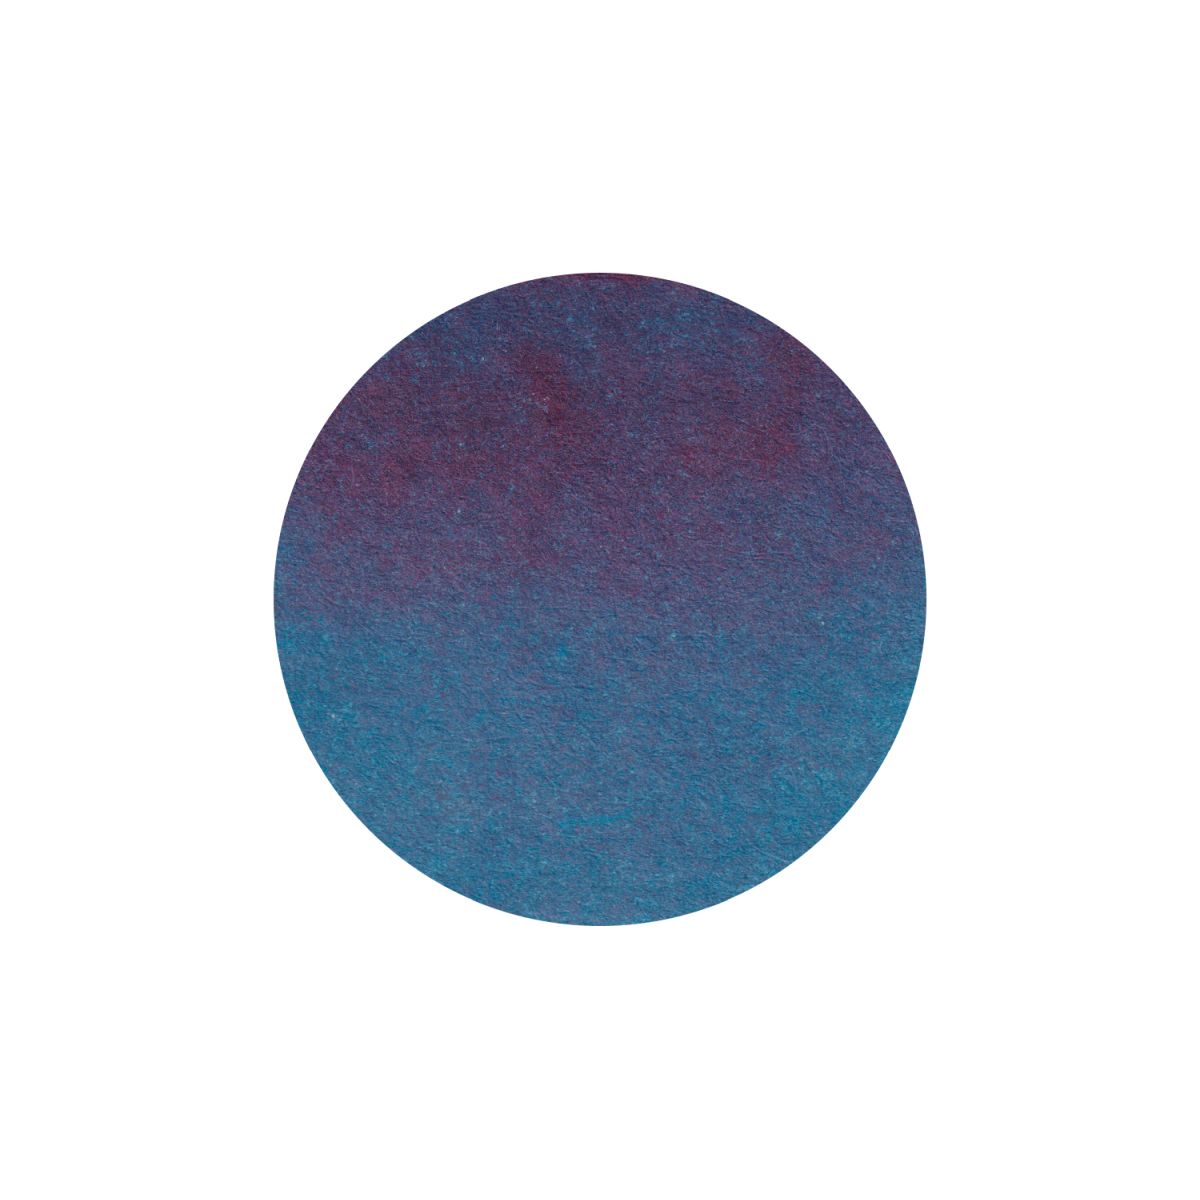 Teranishi Tinte Haikara - Melancholic Blue